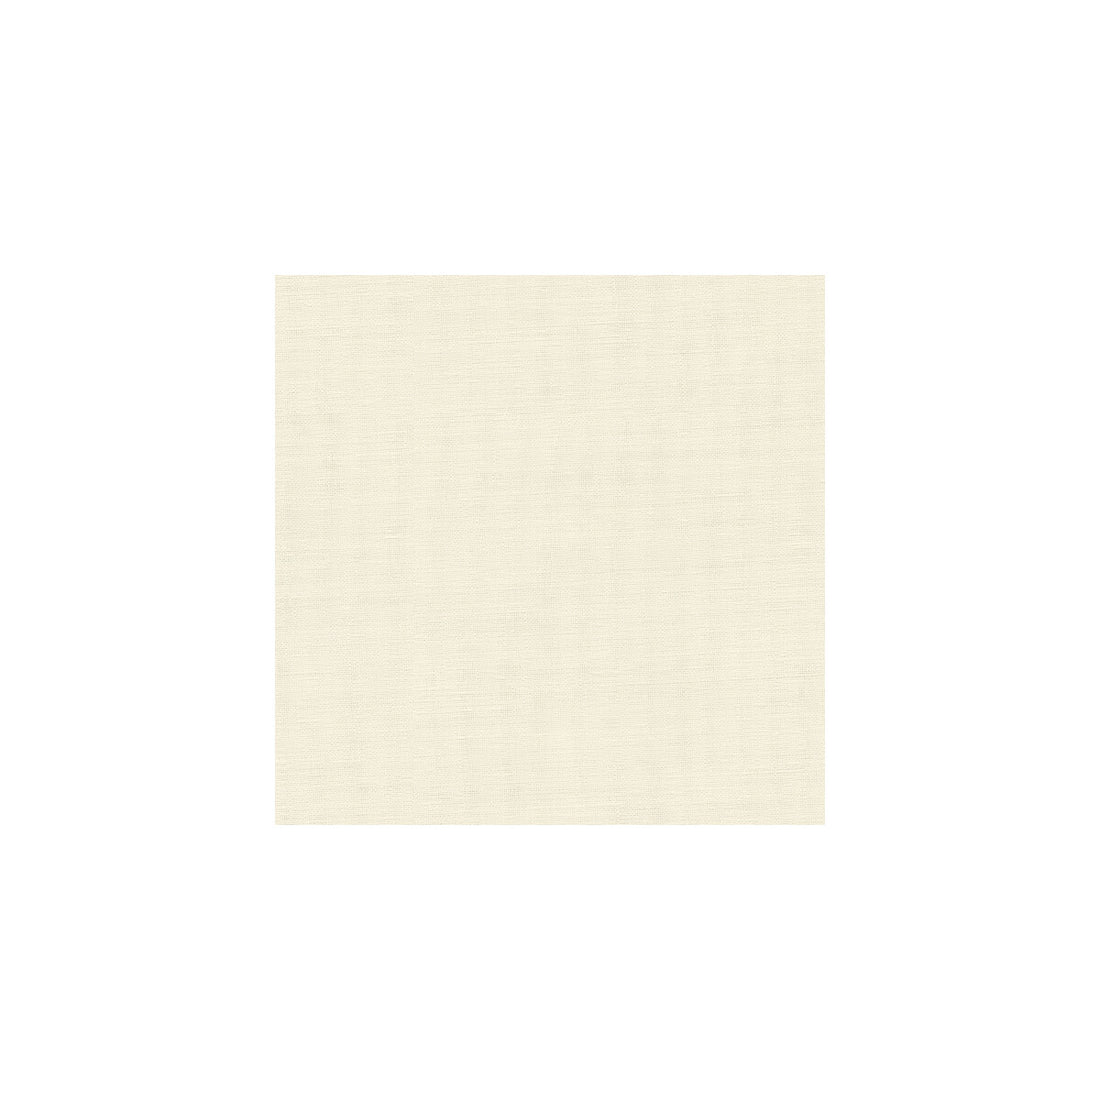 Kravet Basics fabric in 8656-111 color - pattern 8656.111.0 - by Kravet Basics